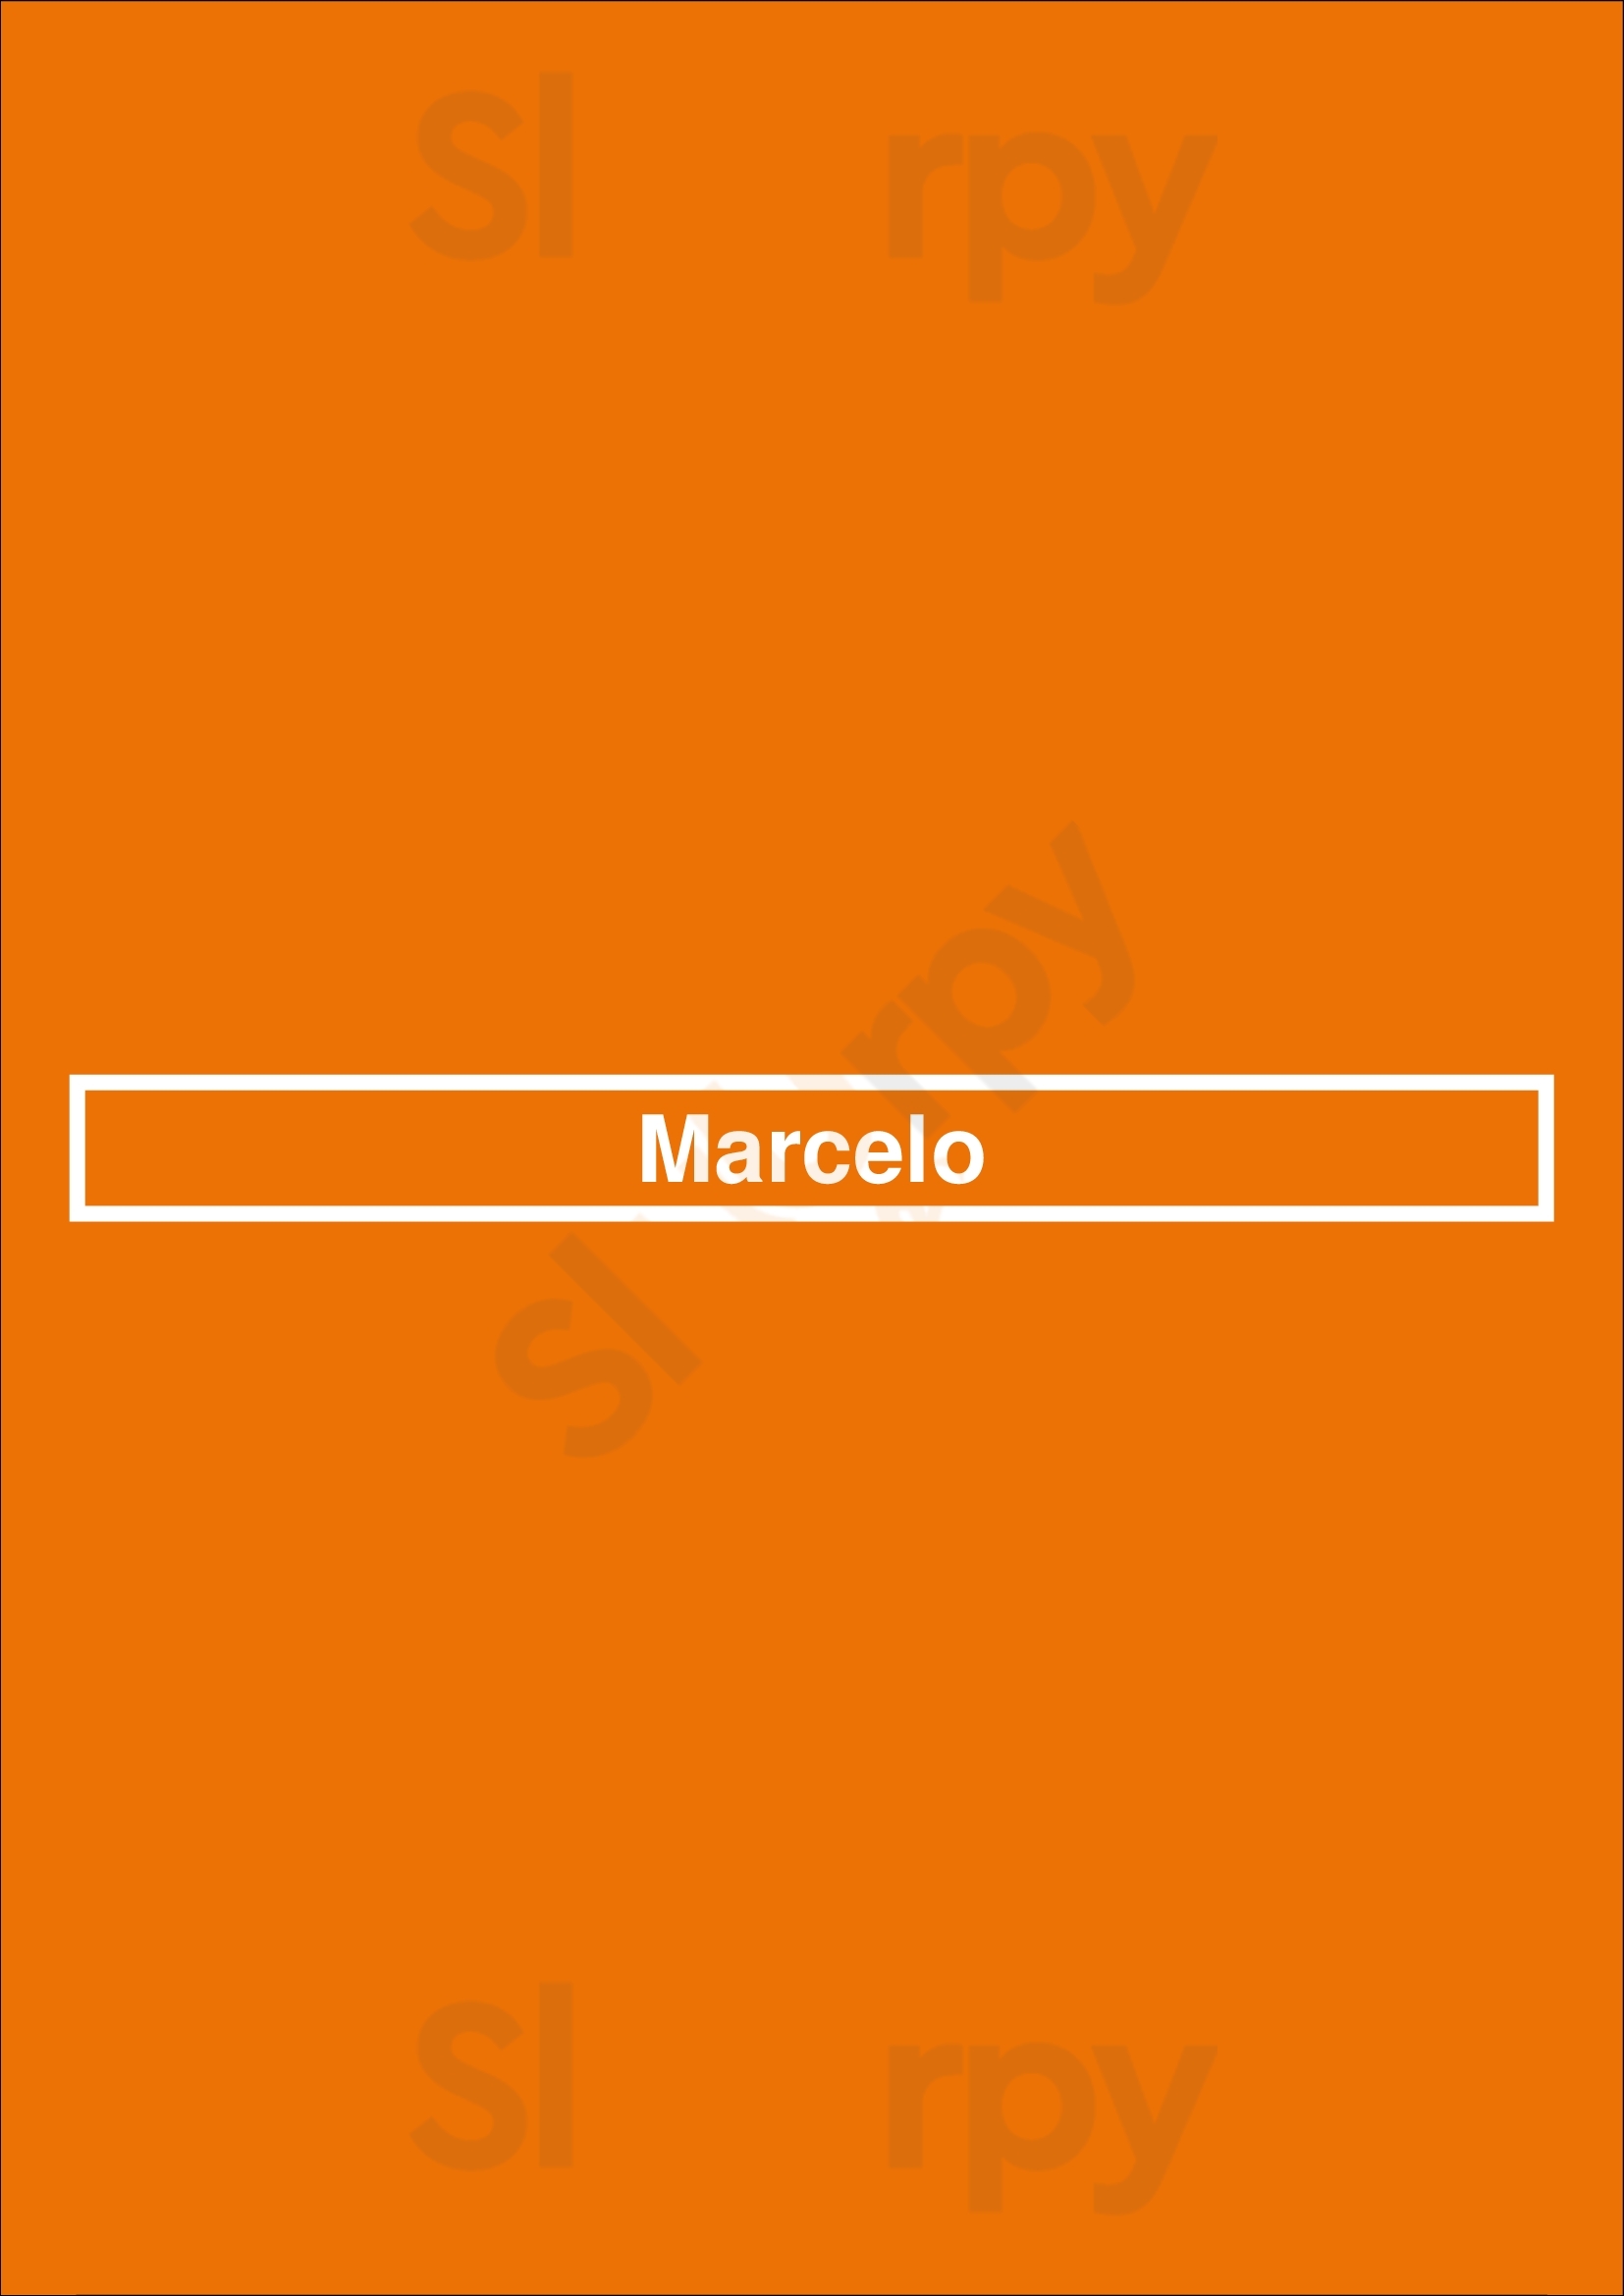 Marcelo Buenos Aires Menu - 1